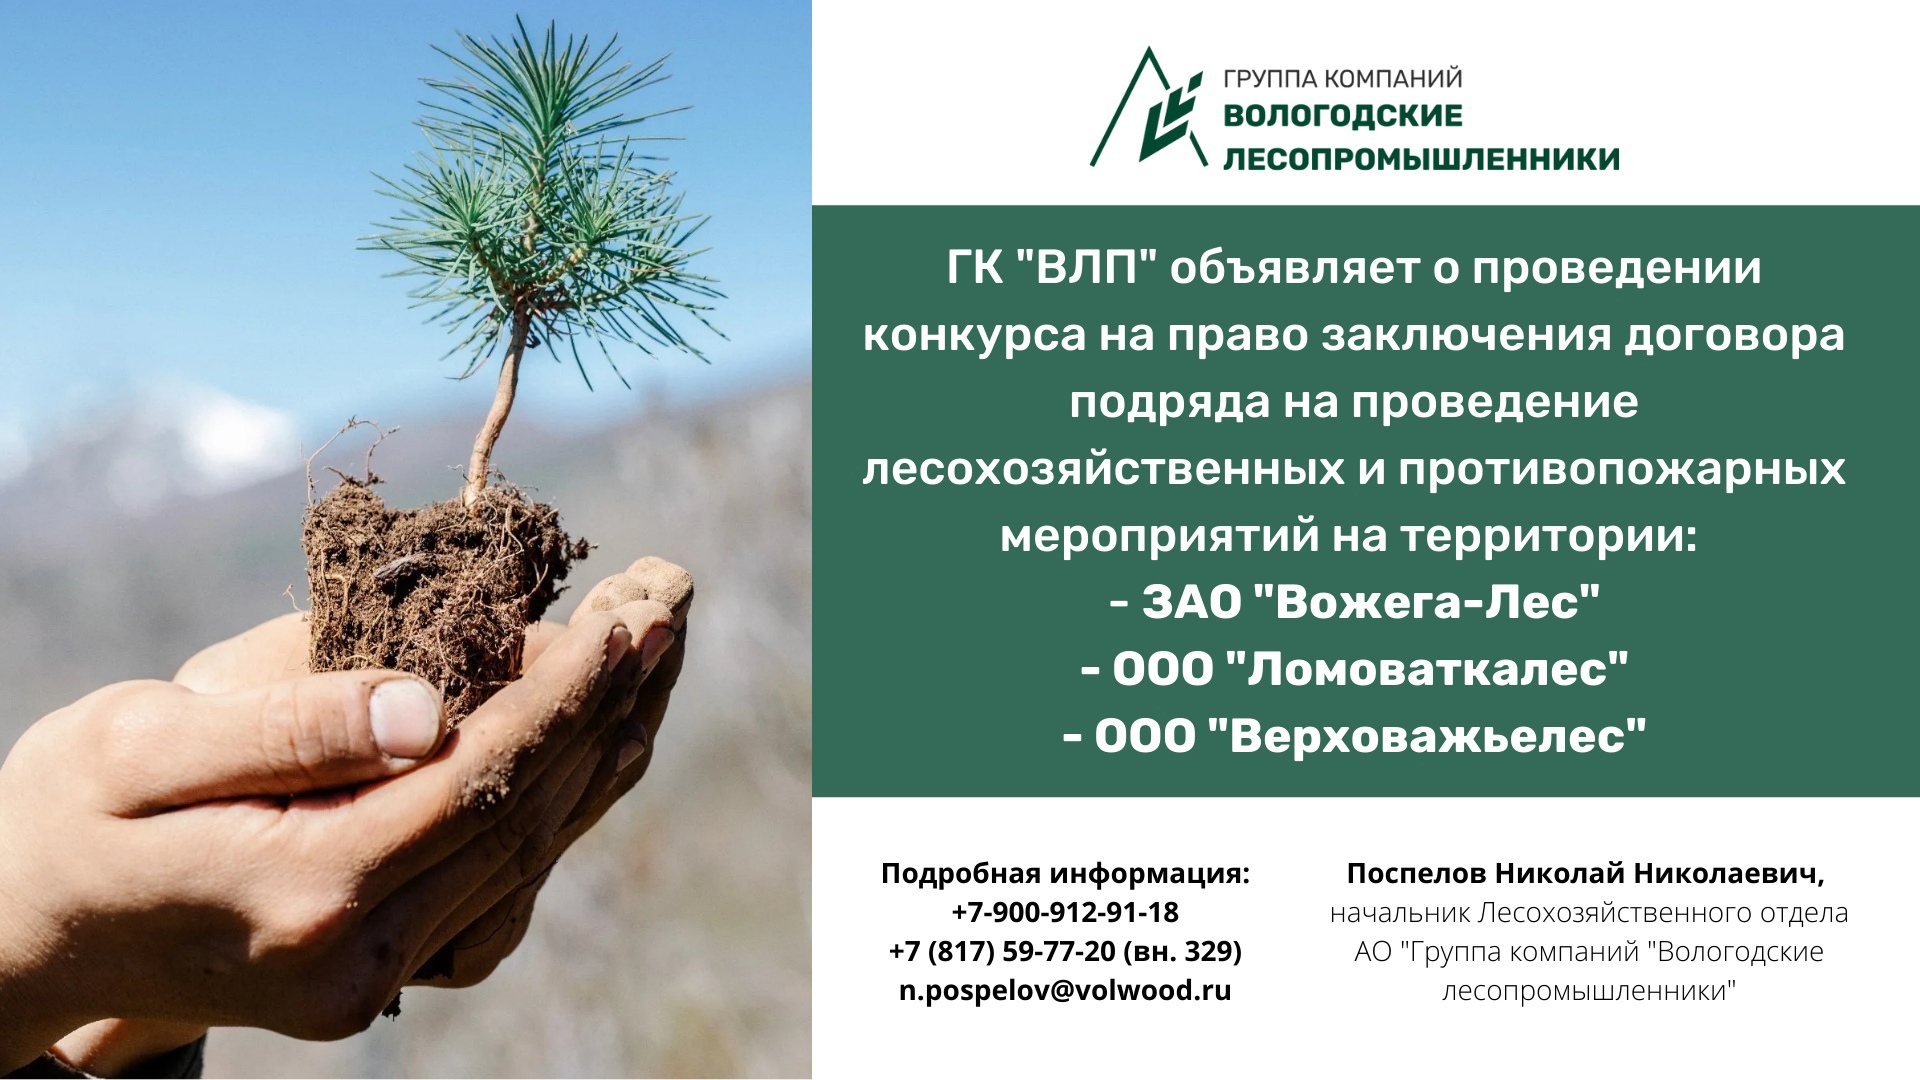 ГК «Вологодские лесопромышленники» объявляет о проведении конкурса на право заключения договора подряда на проведение лесохозяйственных и противопожарных мероприятий на территории